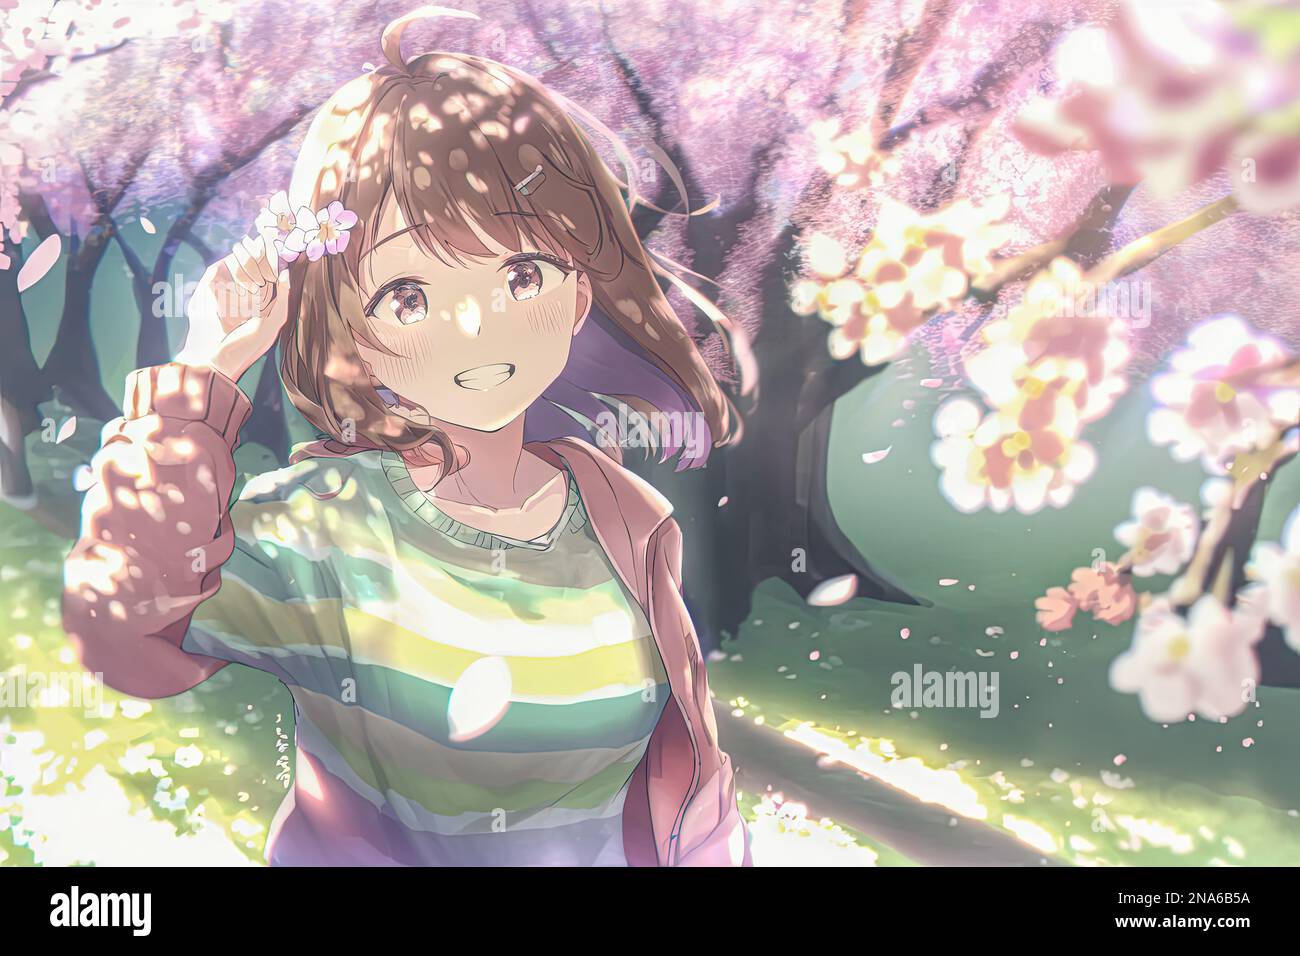 Una donna felice in stile anime cammina attraverso un parco primaverile in fiore, crogiolandosi al sole luminoso. sorride mentre prende le immagini e i suoni della stagione, Foto Stock